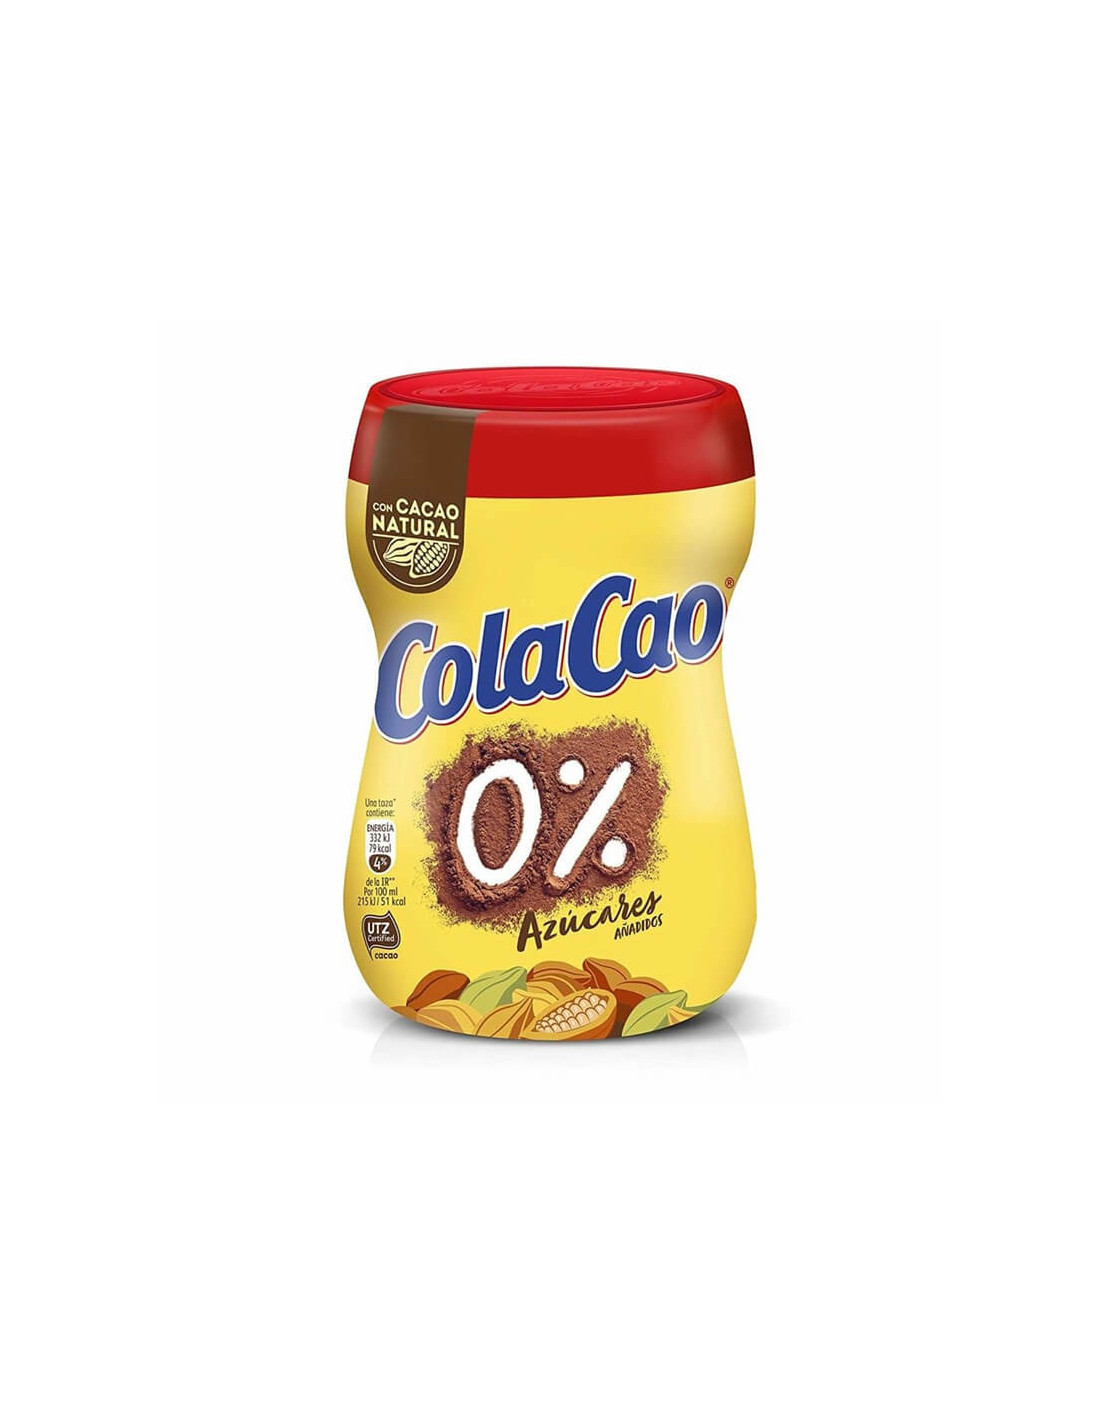 Cola Cao Original, 390g